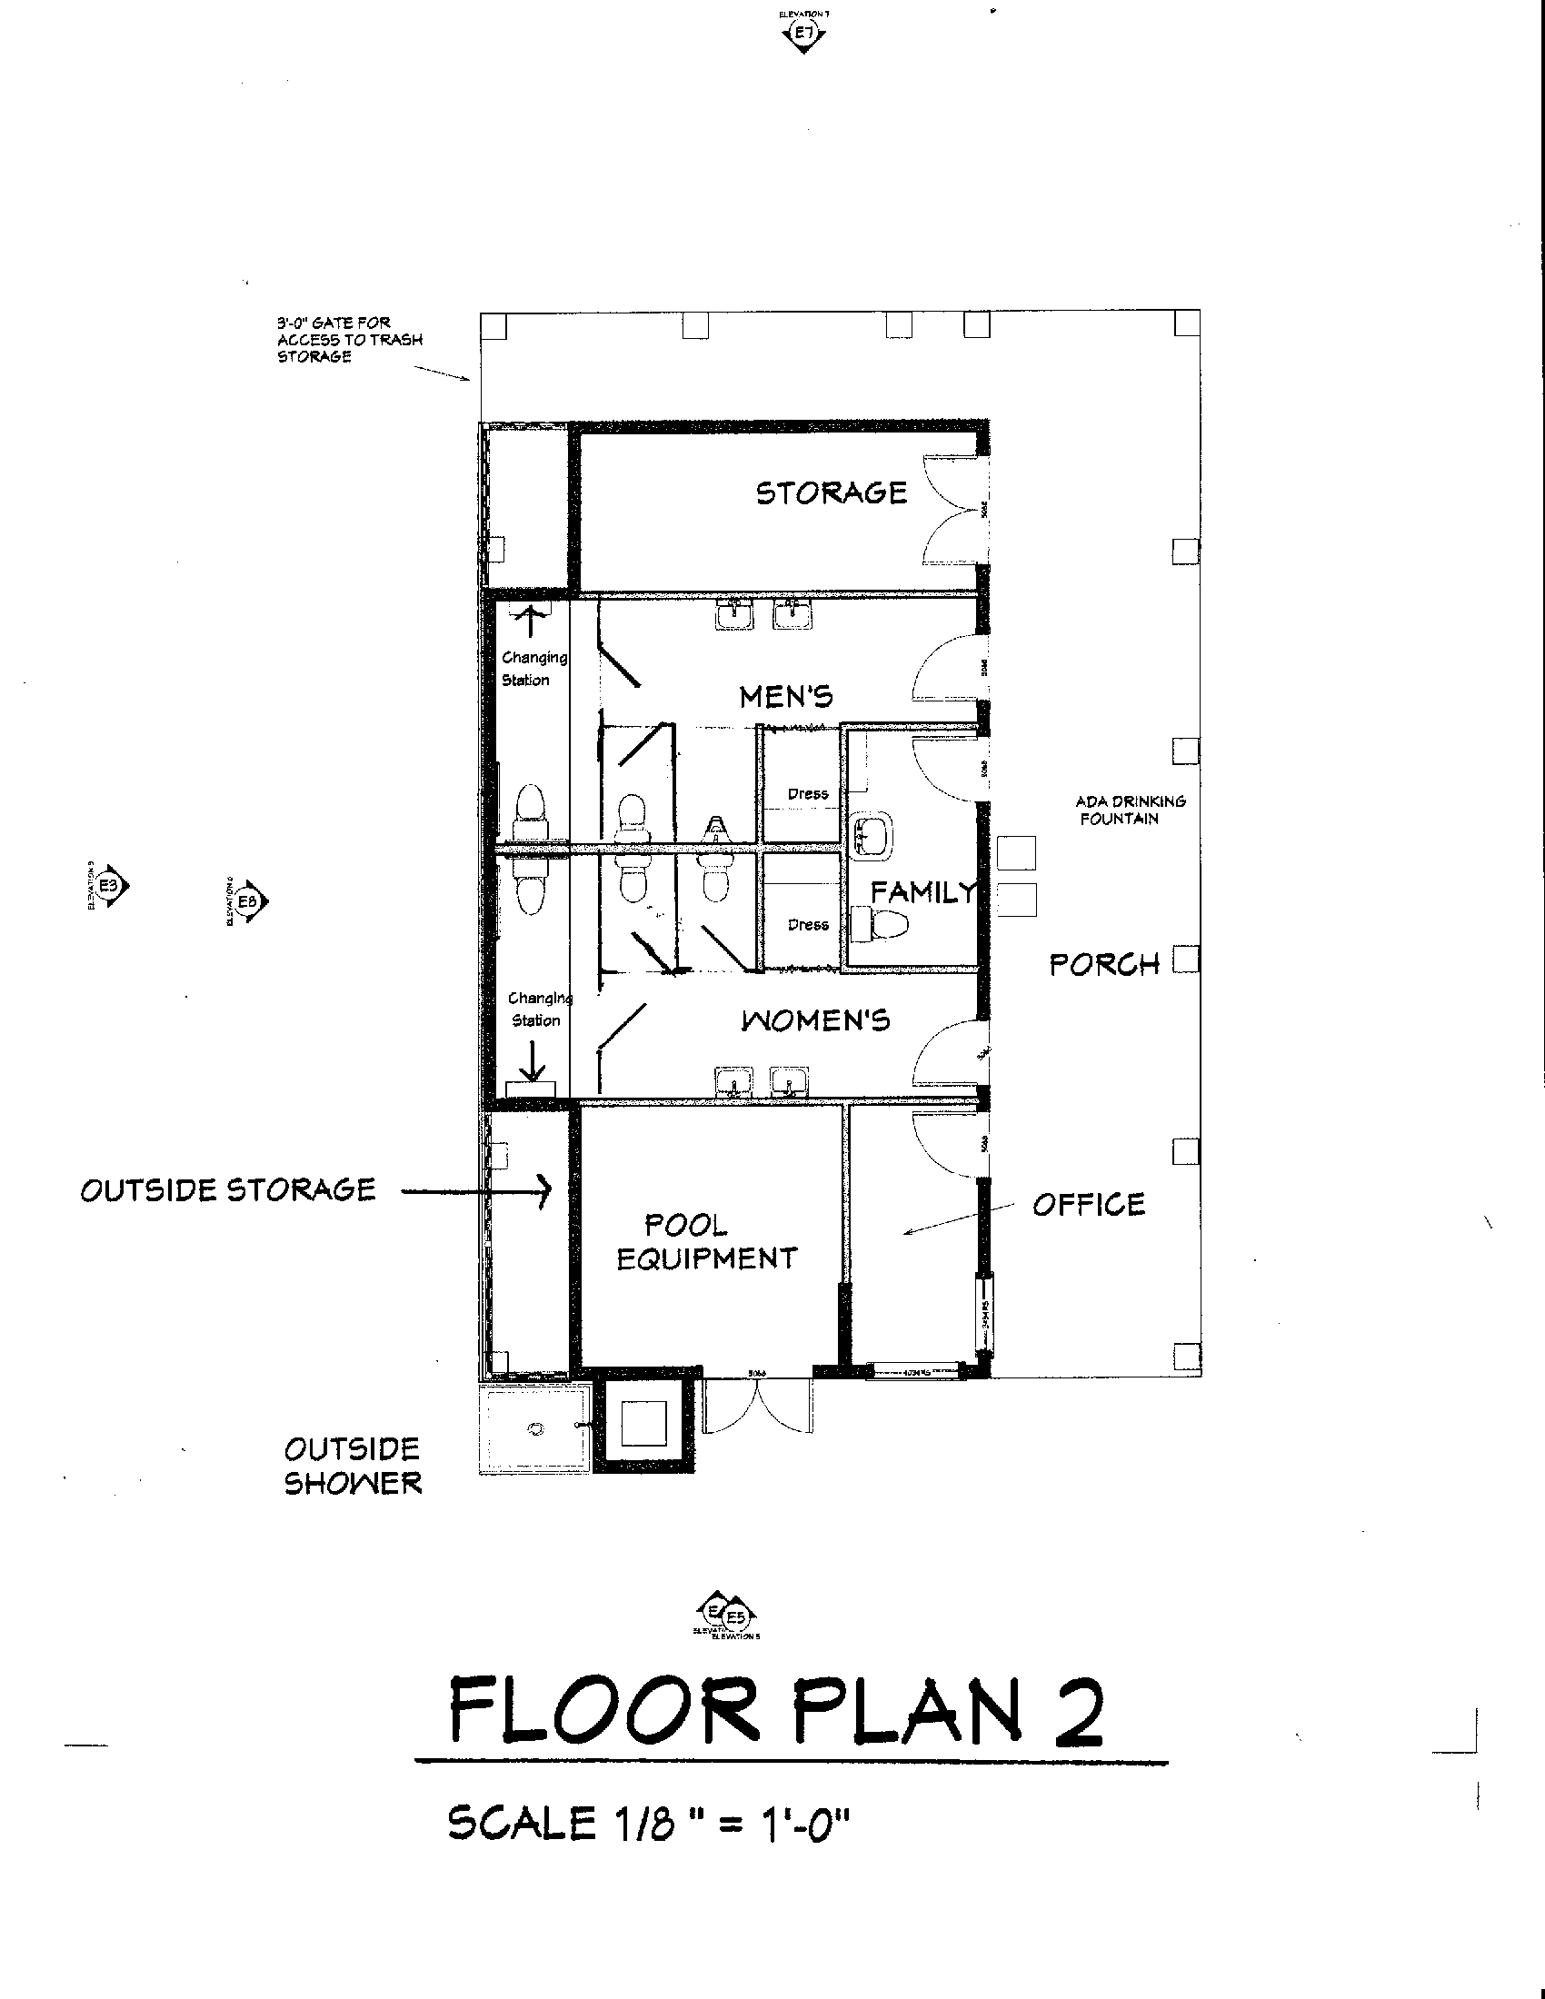 Floorplan Schematic